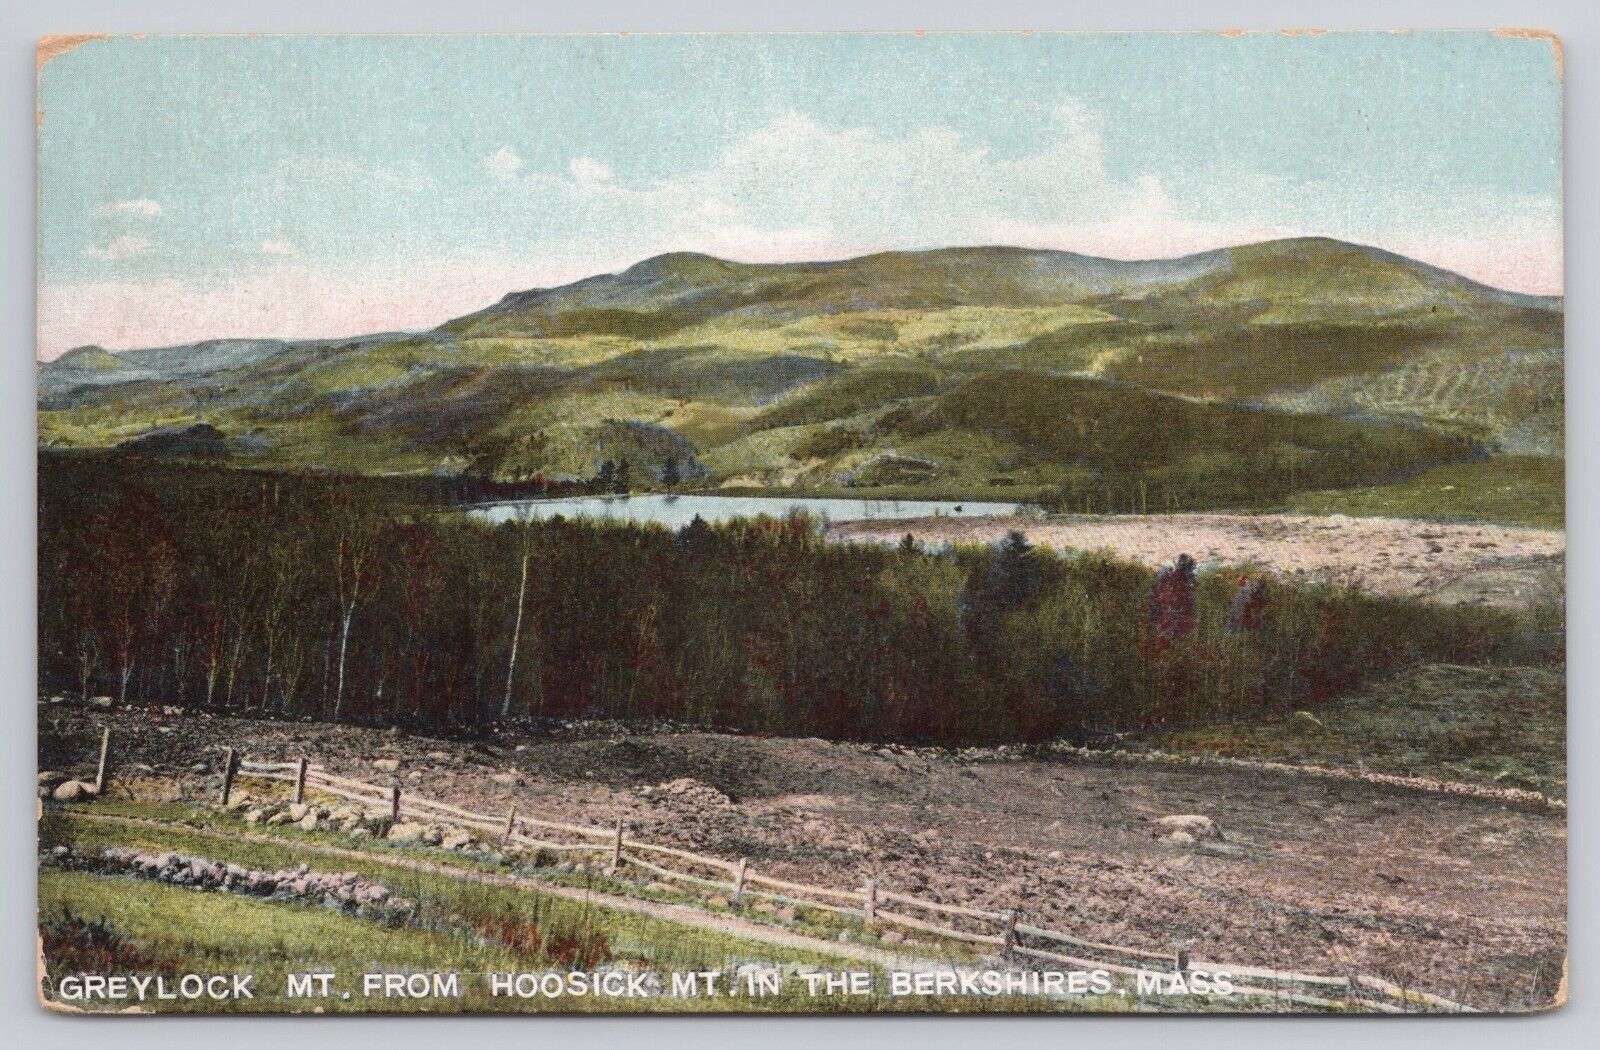 Postcard Greylock mountain from Hoosick Mountain the Berkshires Massachusetts